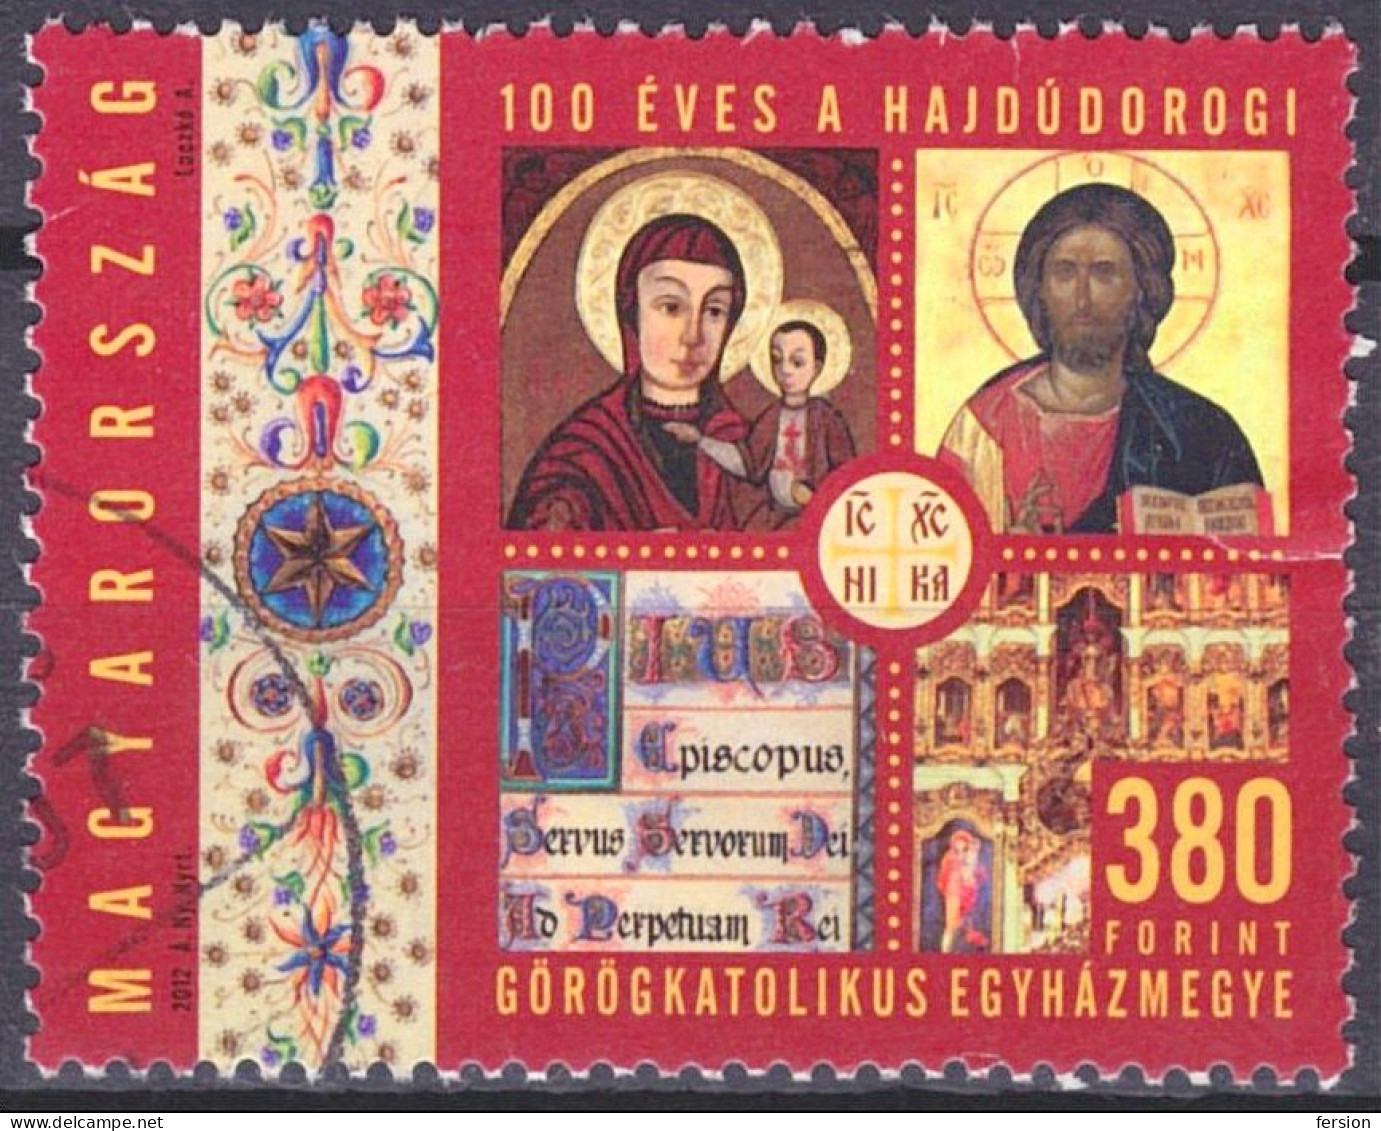 Orthodox Greek Catholic CHURCH Diocese In Hungary Hajdudorog / Icon Icons - Jesus - USED - Hungary 2012 - Religious